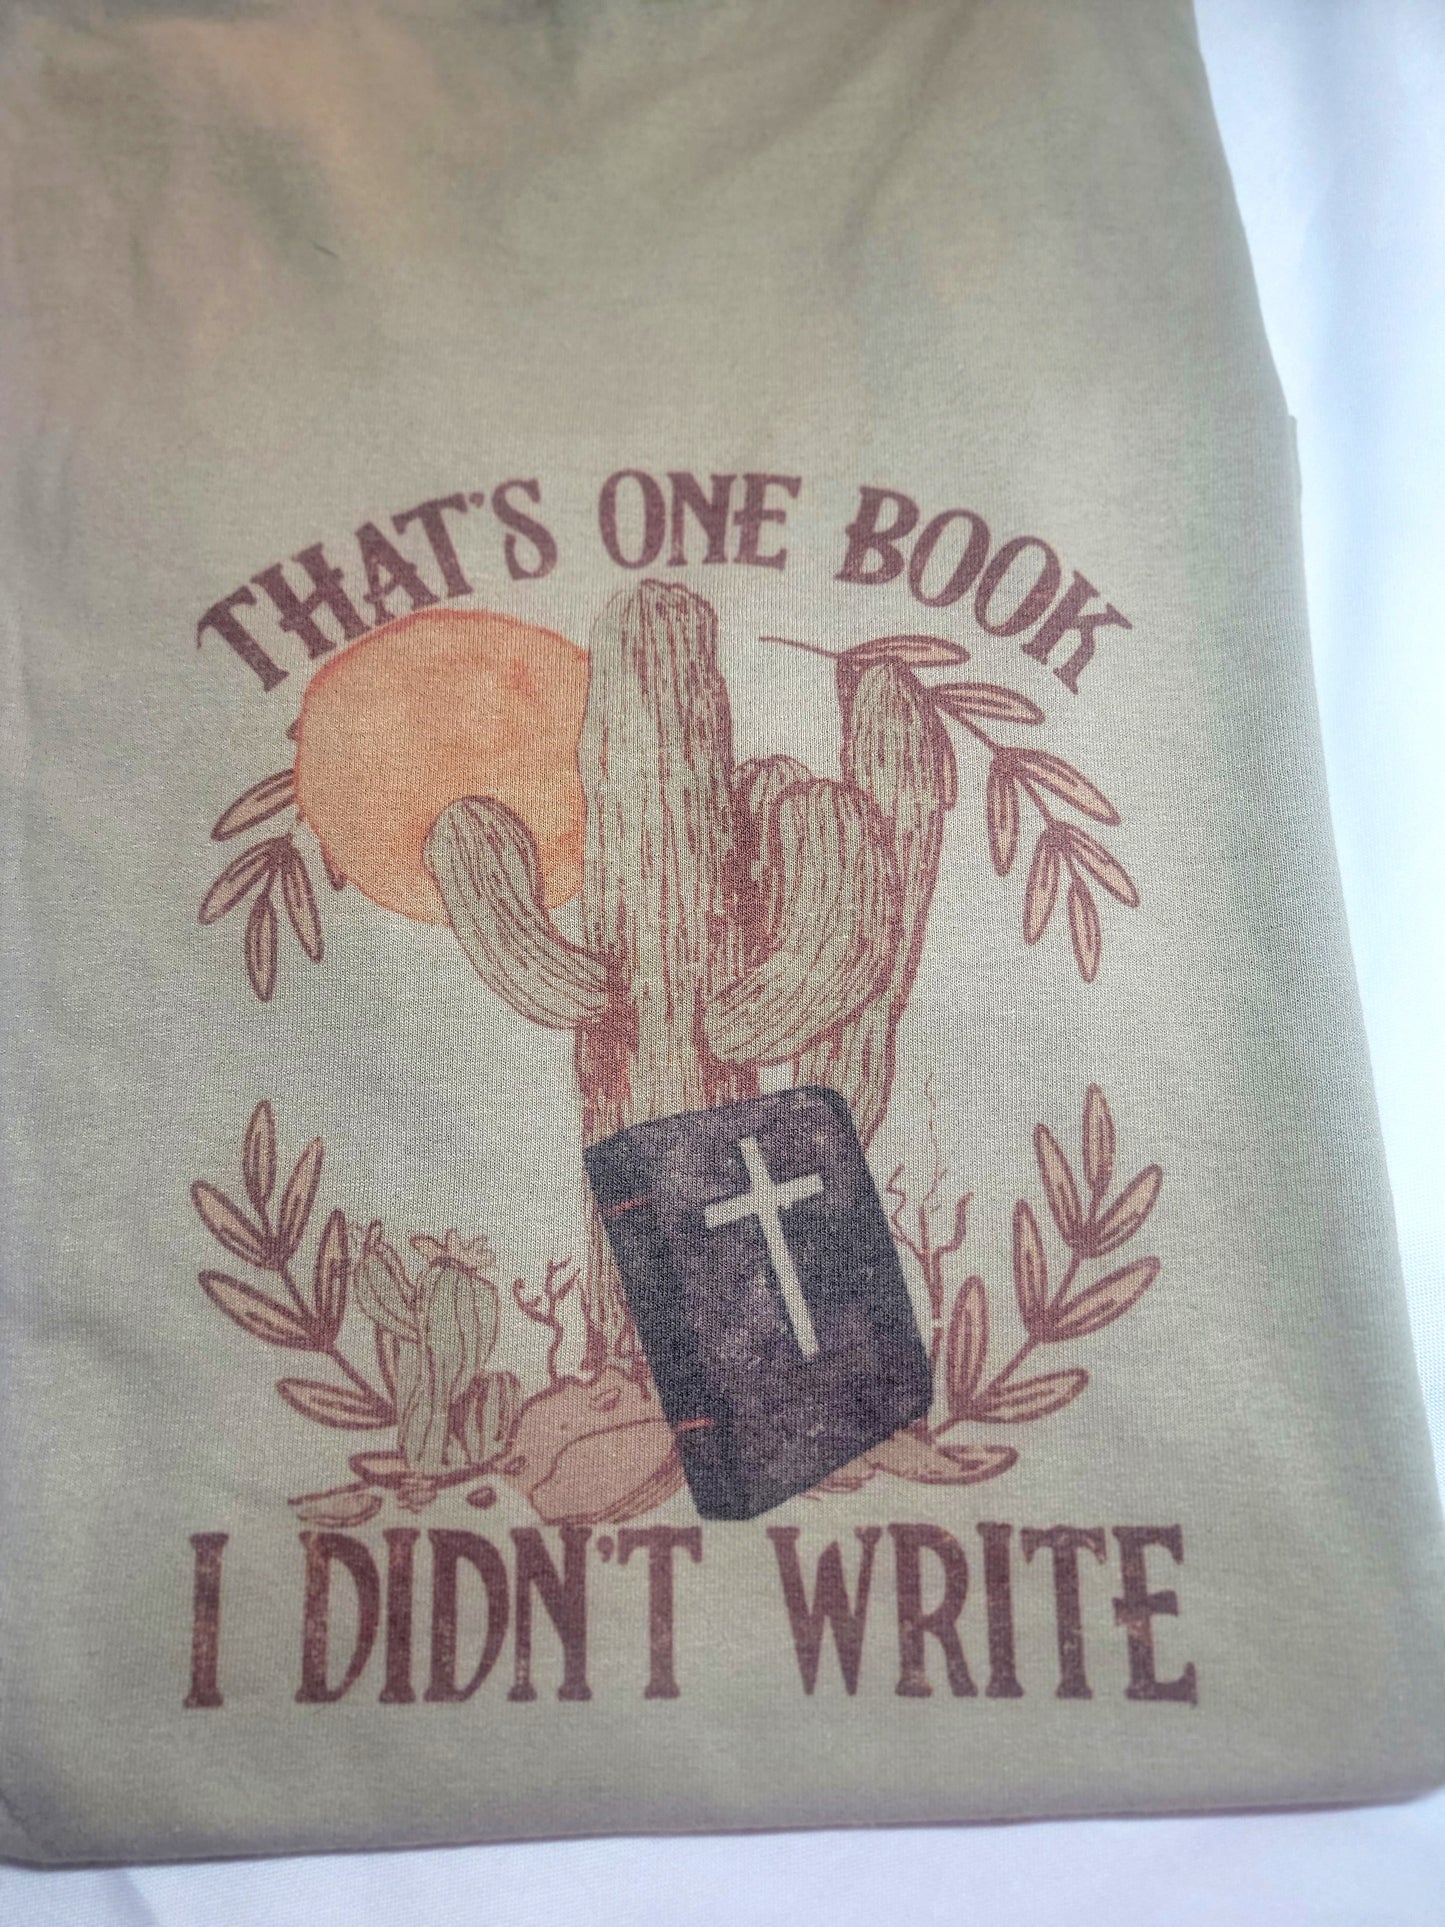 One book tshirt size medium